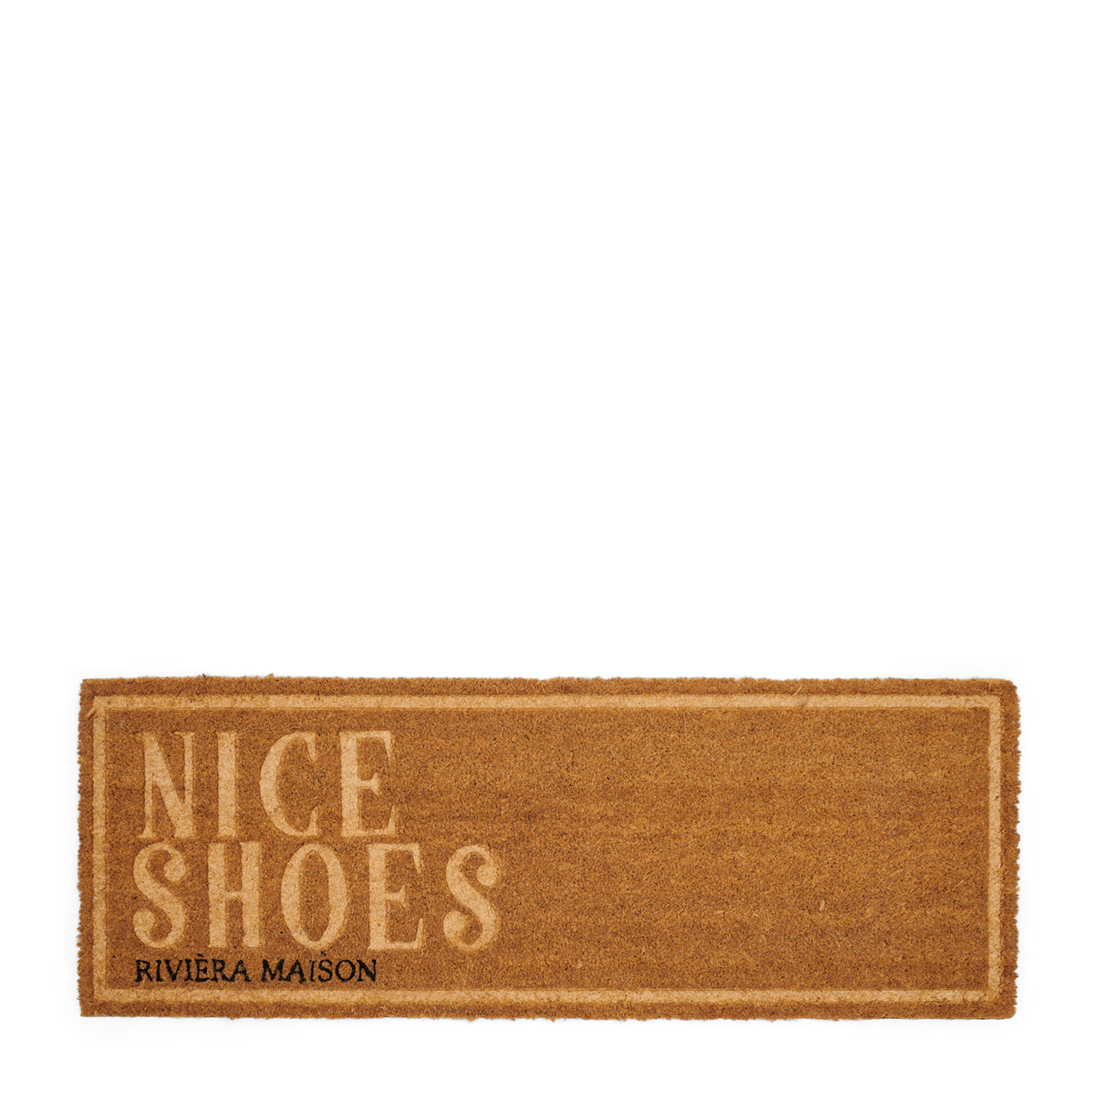 Riviera Maison Deurmat binnen - Nice Shoes Doormat - Naturel